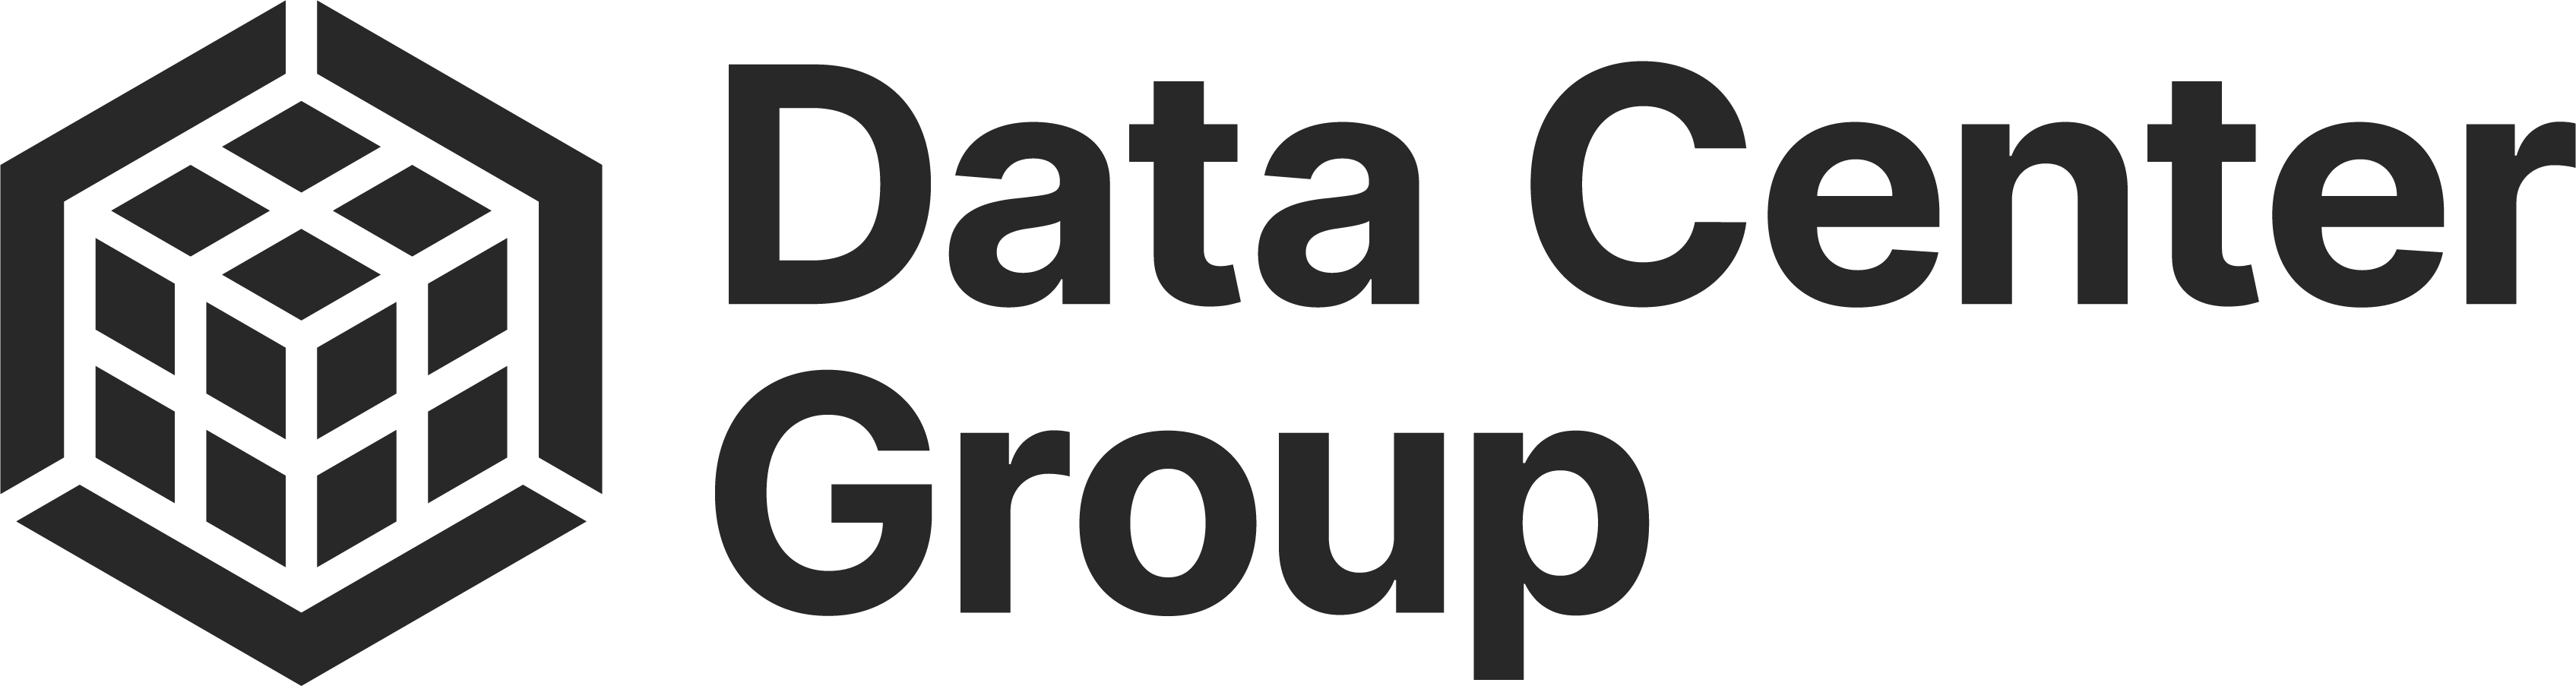 Data Center Group Logo - Partner GCDS24